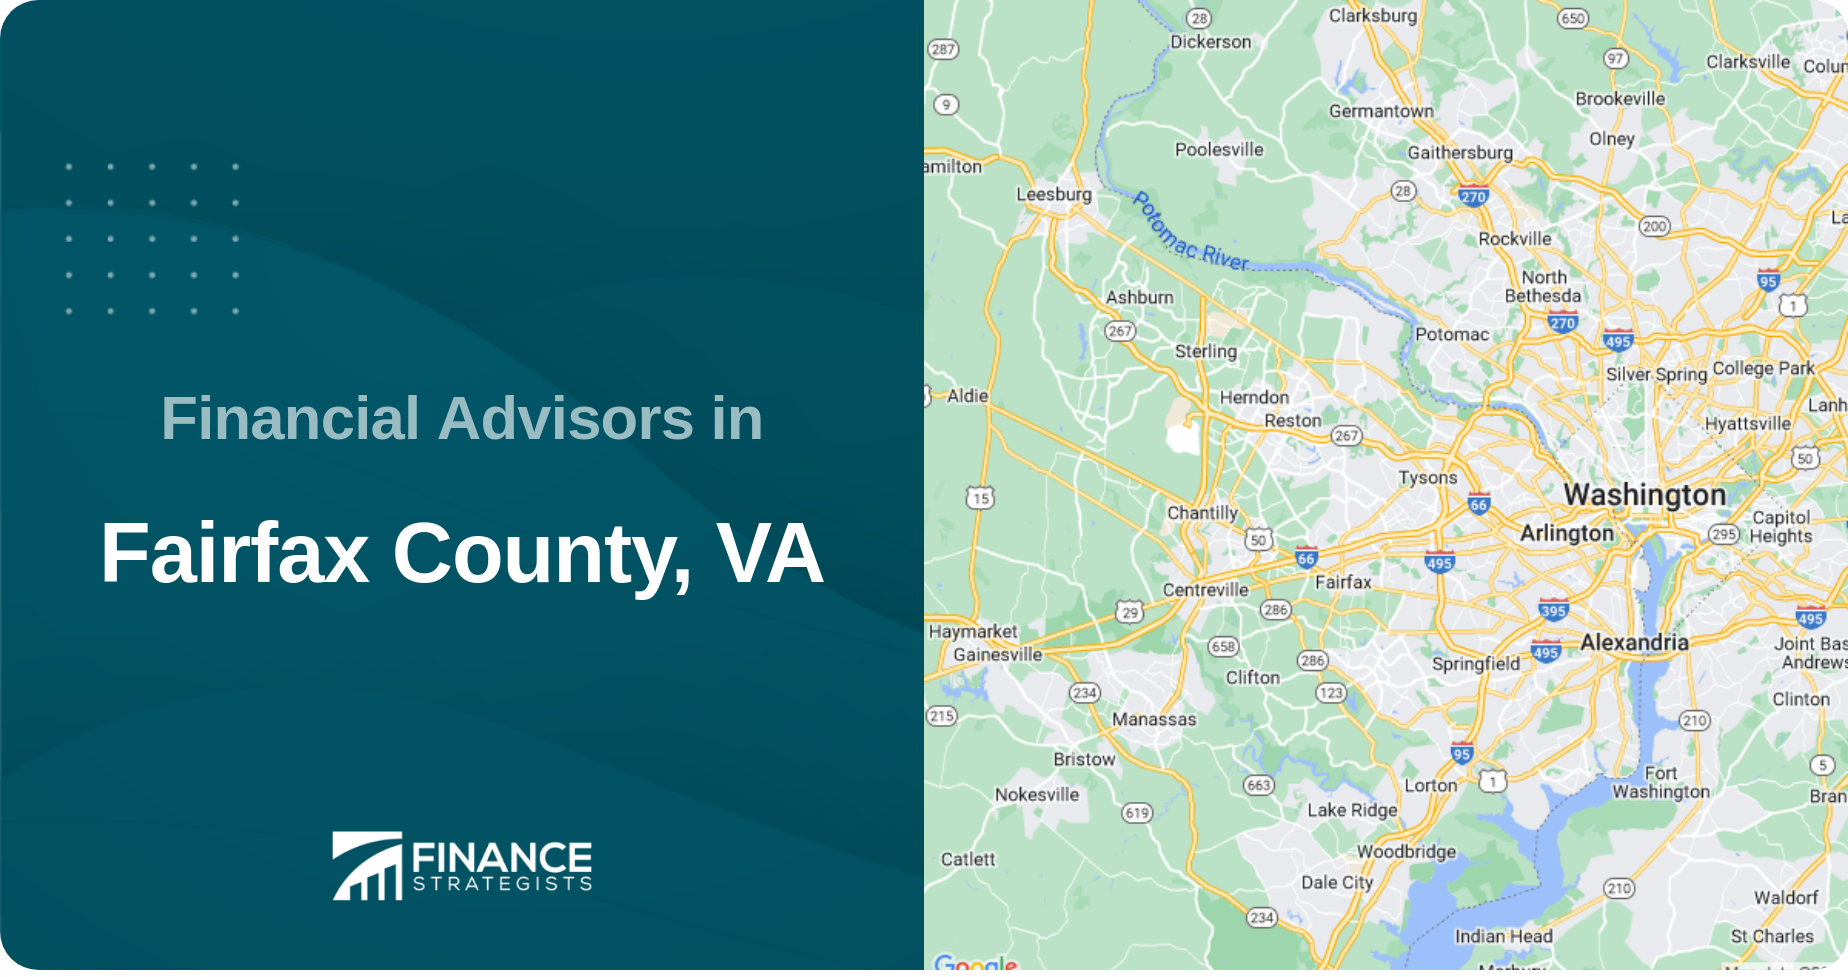 Financial Advisors in Fairfax County, VA